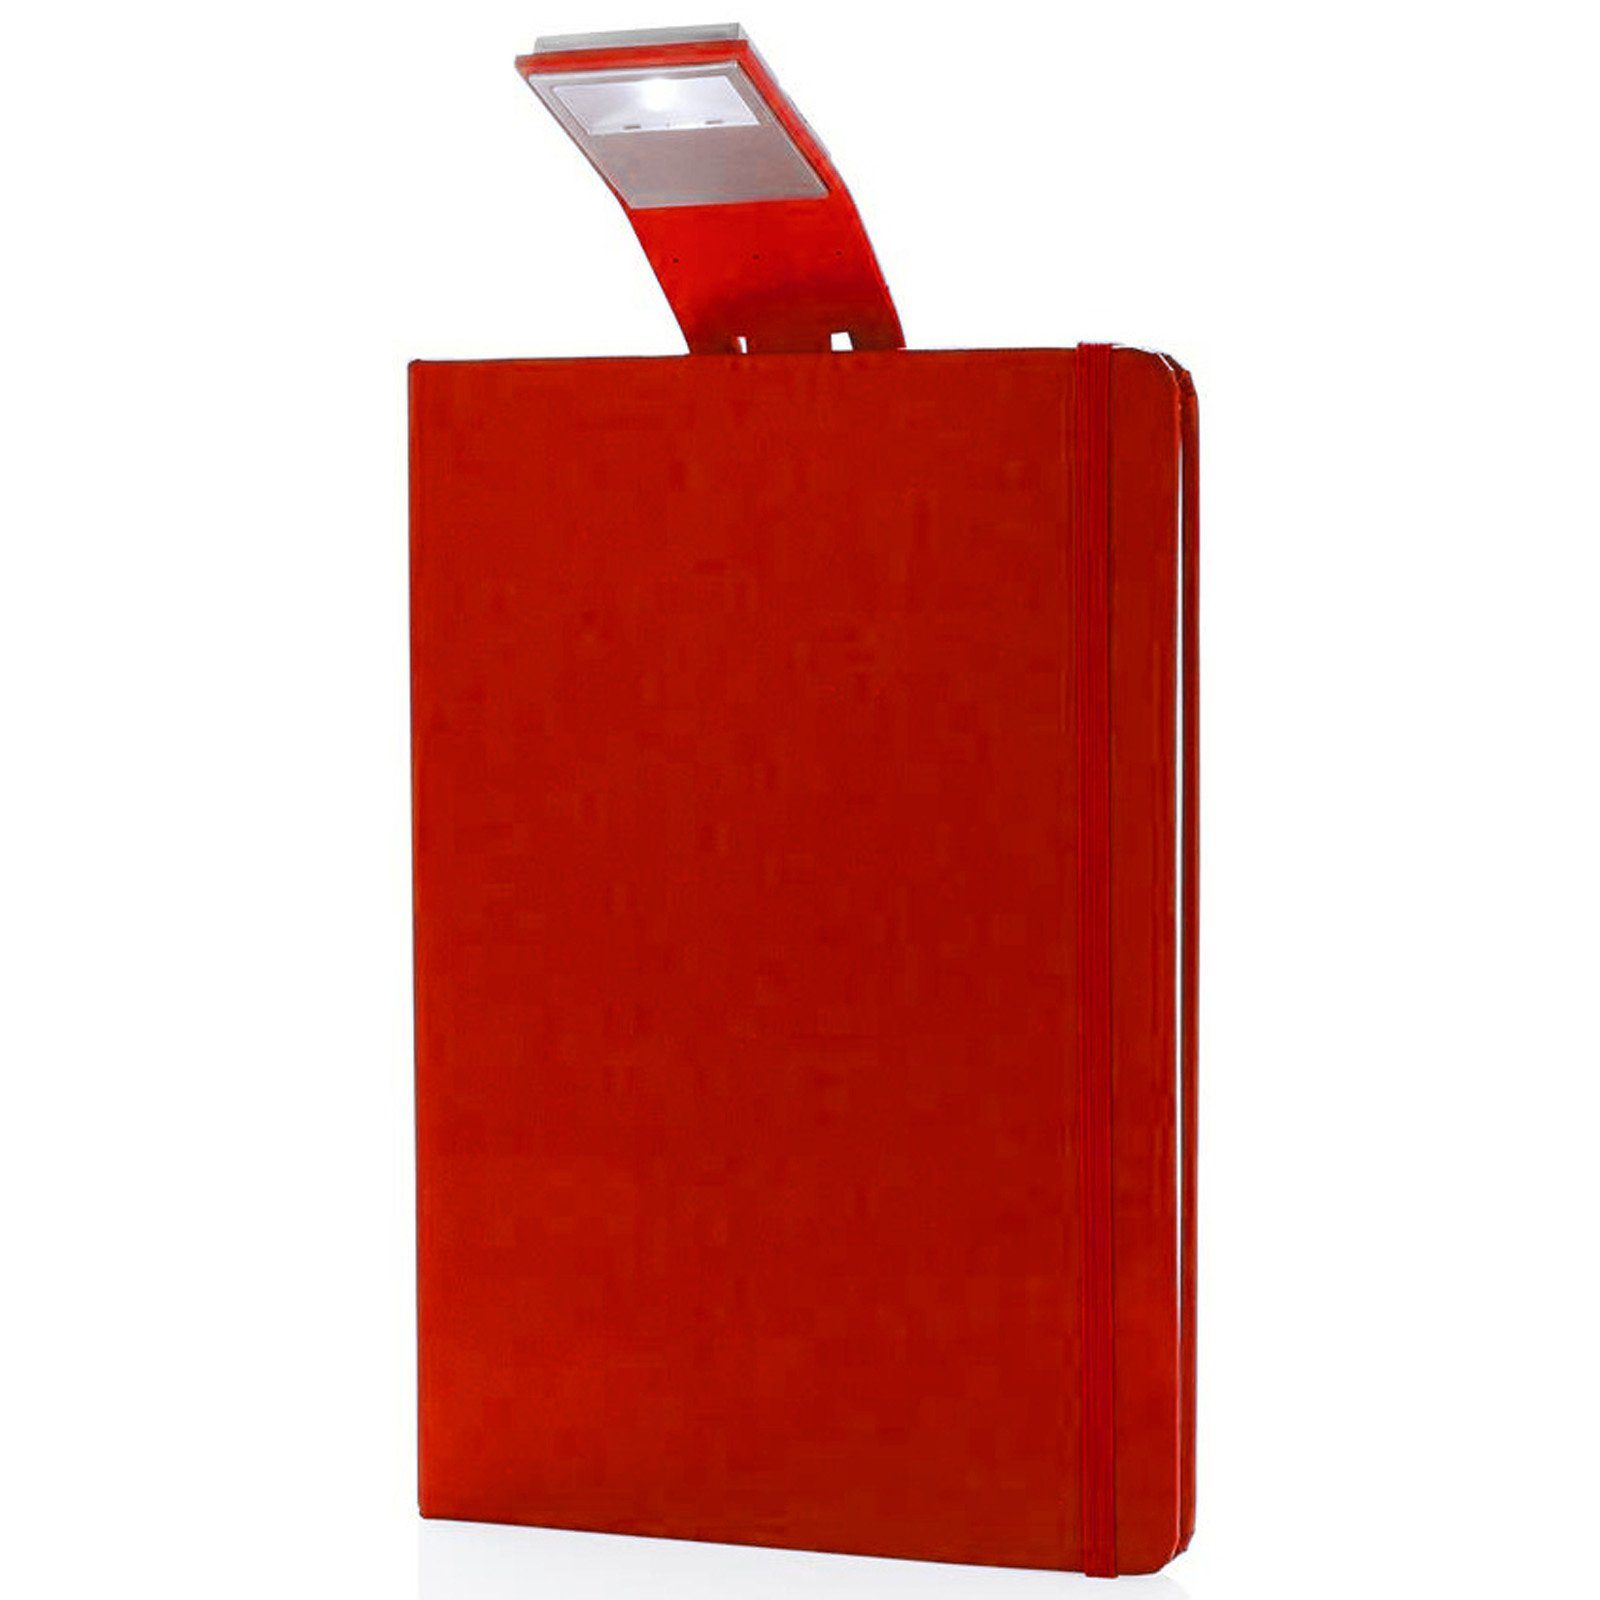 XD Collection Notizbuch Notizblock A5 mit Hardcover Leselampe 160 cremeweiße Seiten Liniert, mit LED Lesezeichen & Gummiband rot